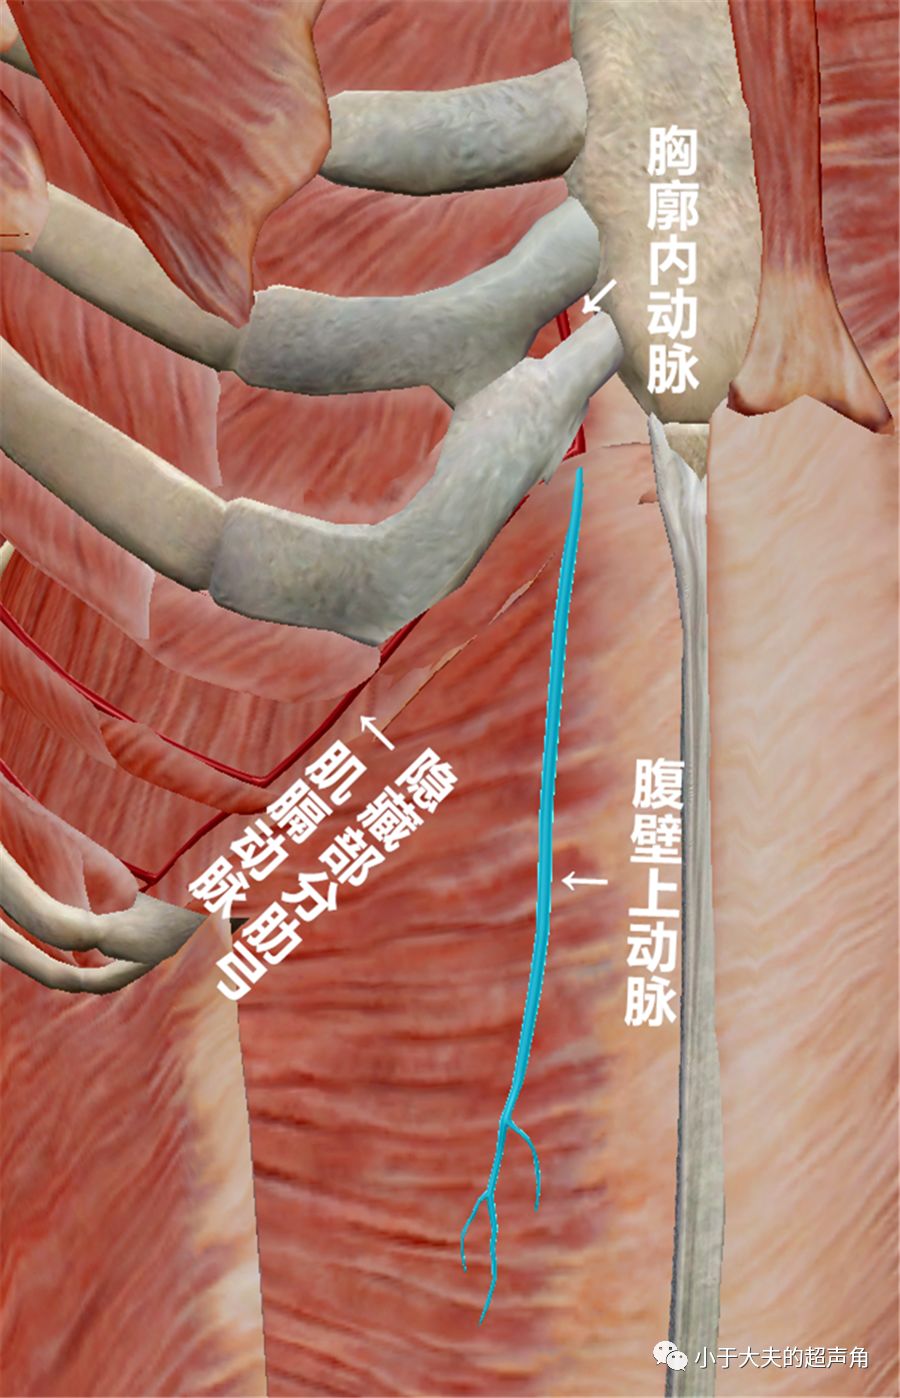 图8:胸廓内动脉远端移行为腹壁上动脉和肌膈动脉,前者继续下行于腹直